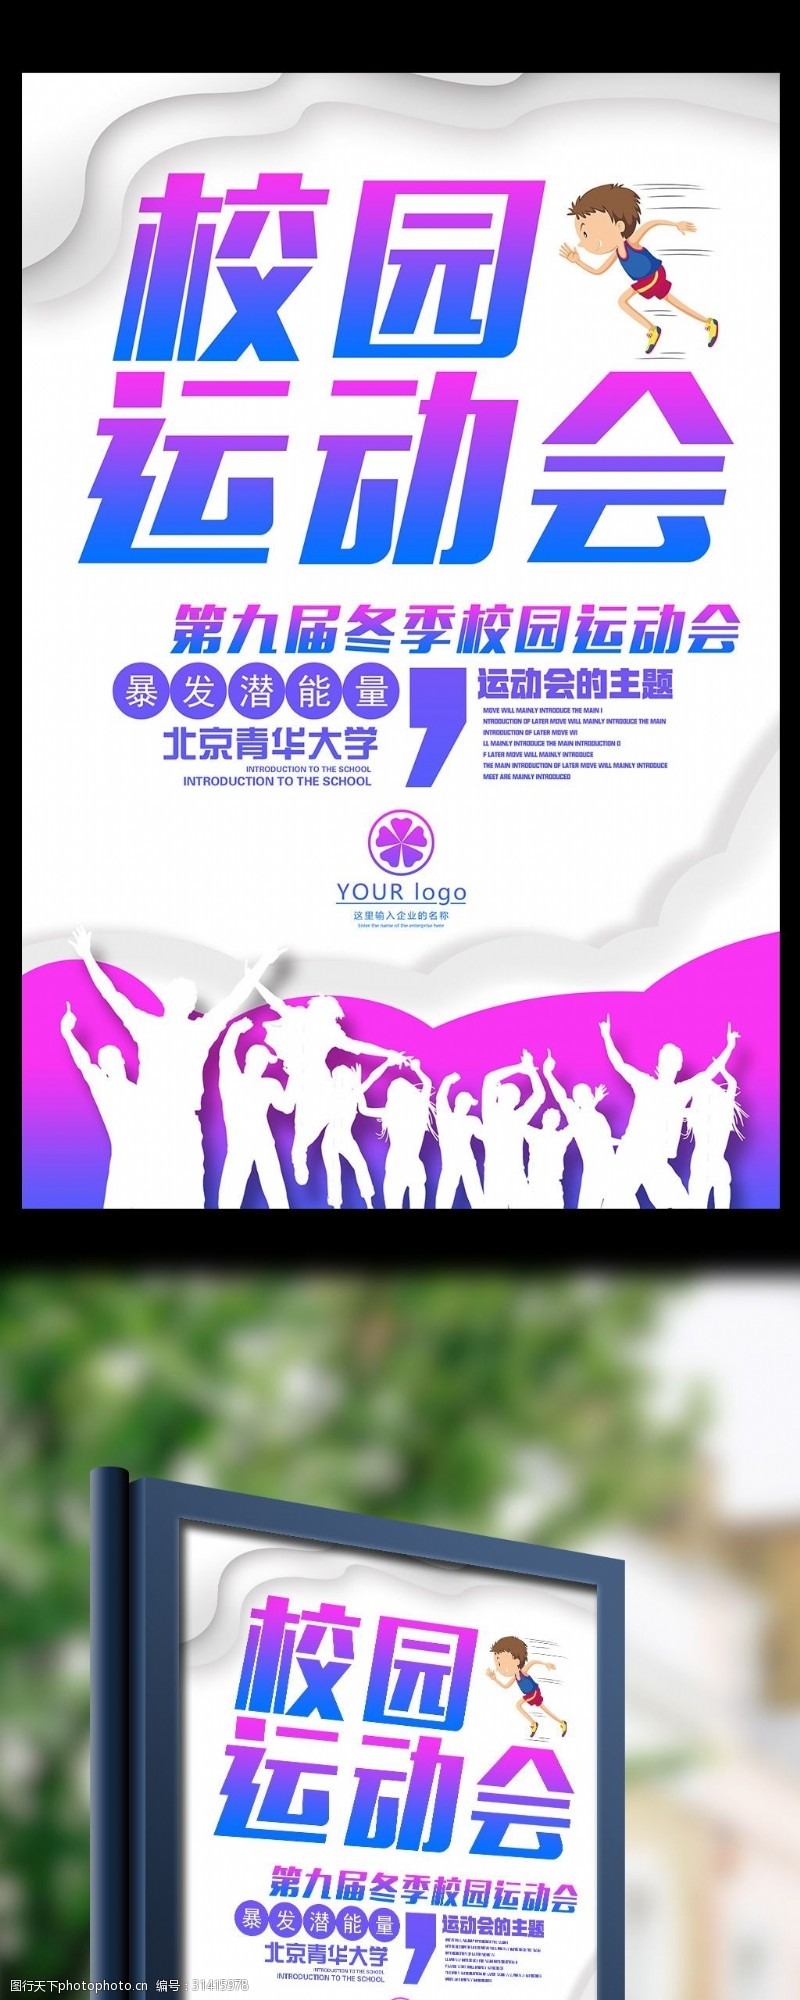 竞技体育素材下载绚丽青春校园运动会宣传海报模板下载